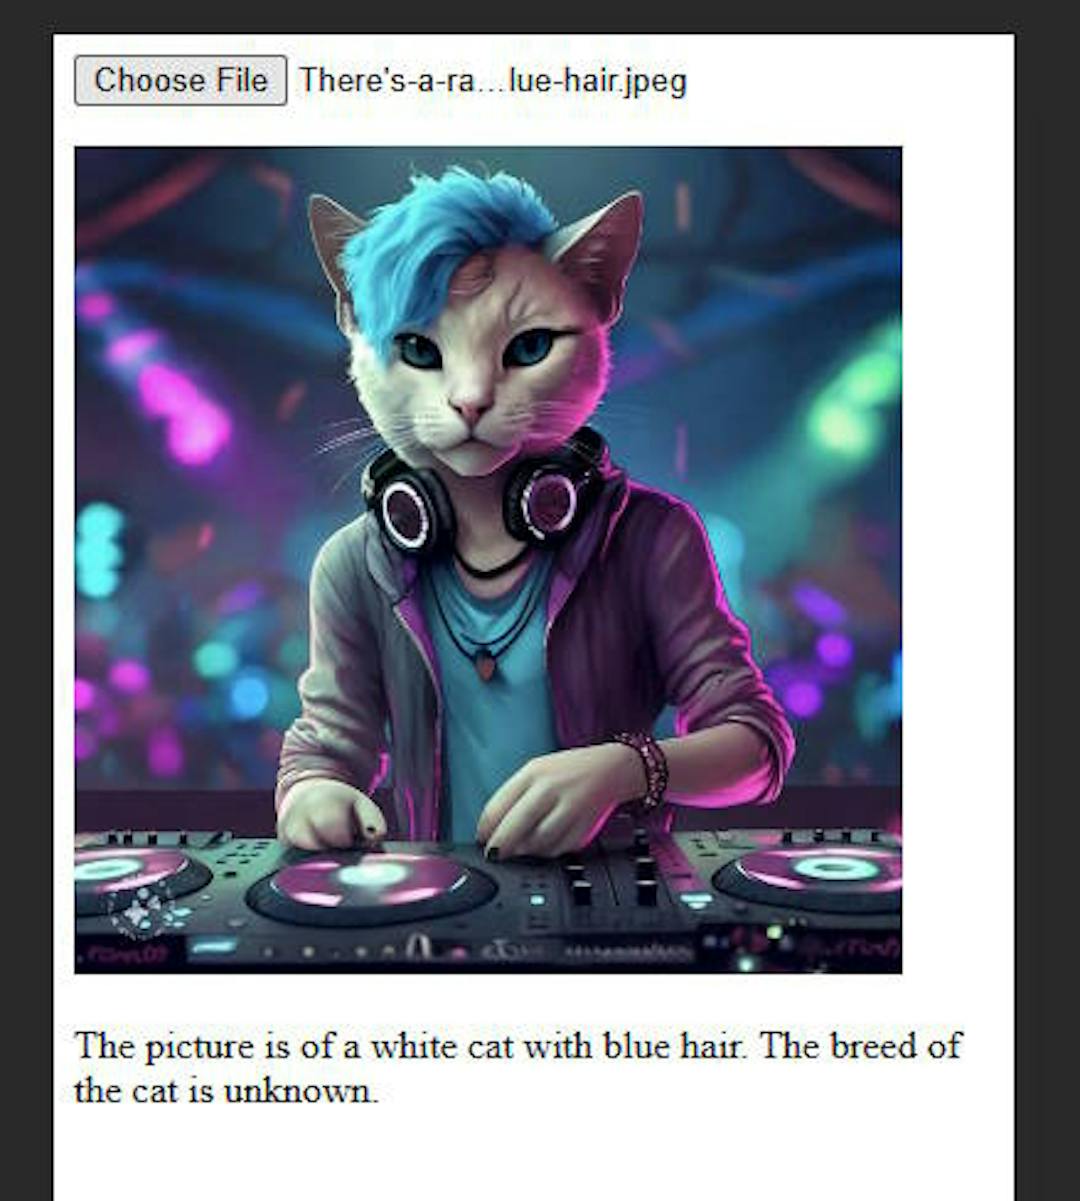 一张猫当 DJ 的照片。